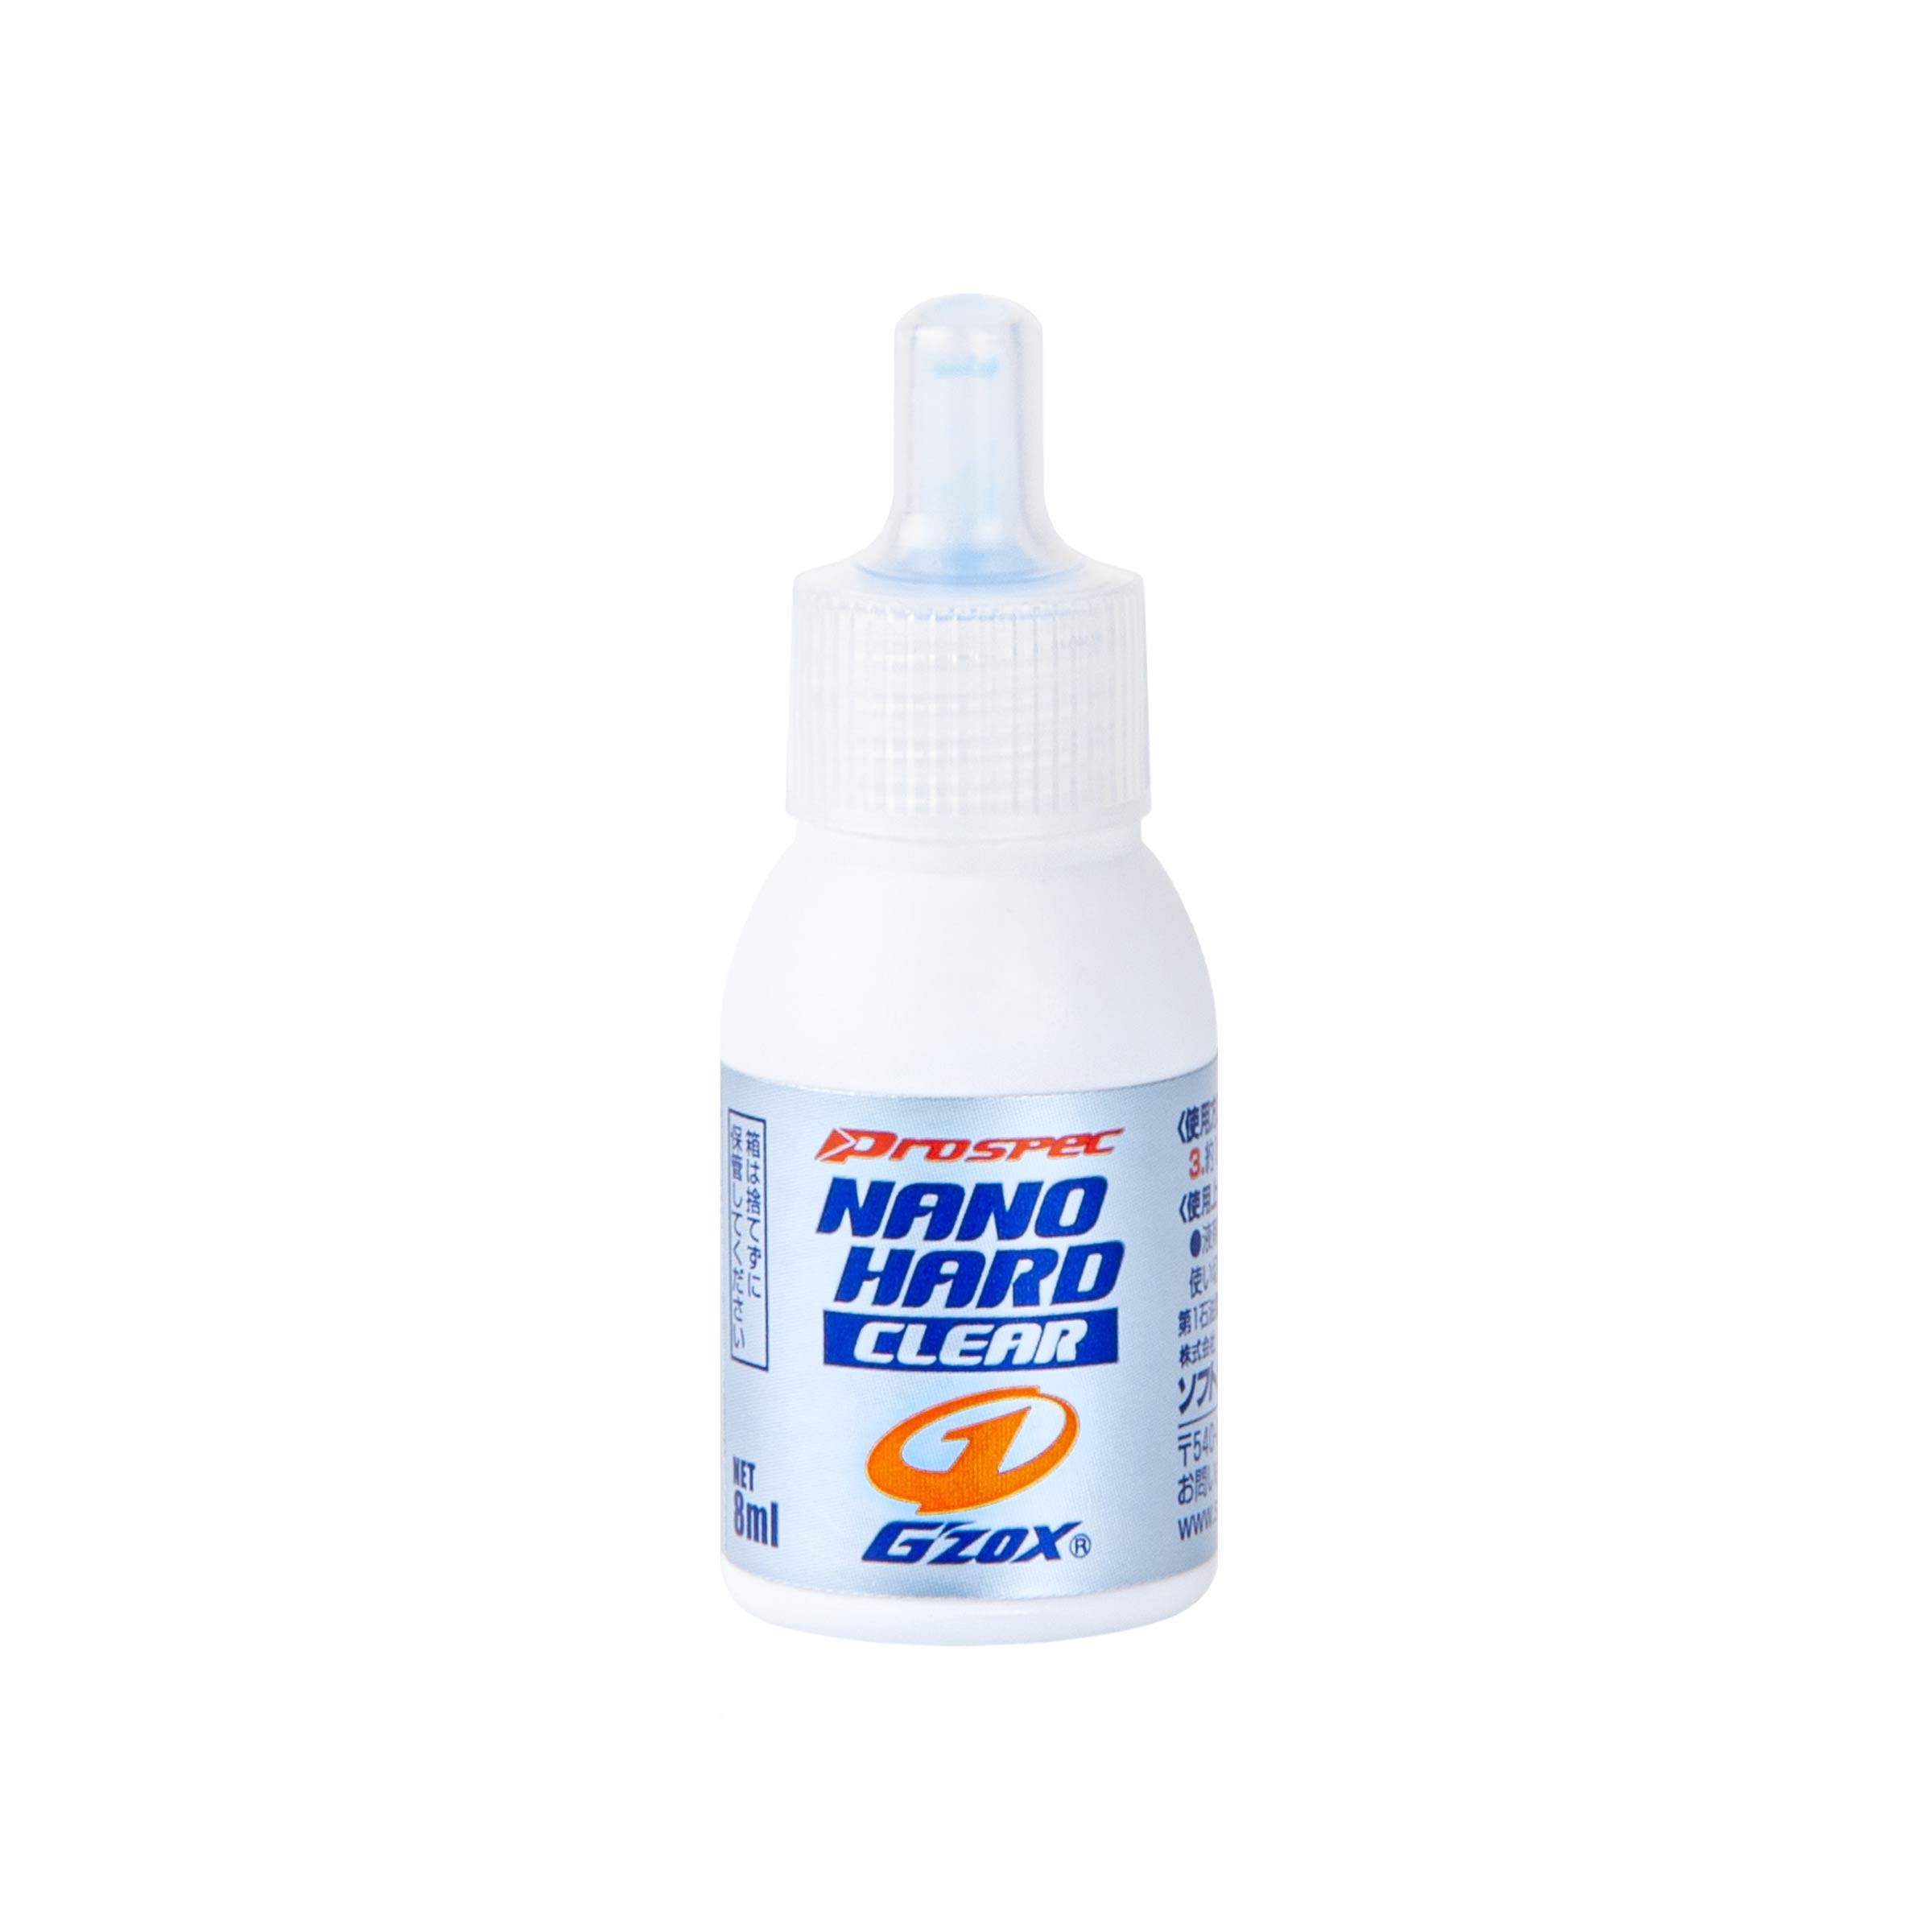 Nano Hard Clear, Regenerierungsmittel für klare Kunststoffteile, 8 ml